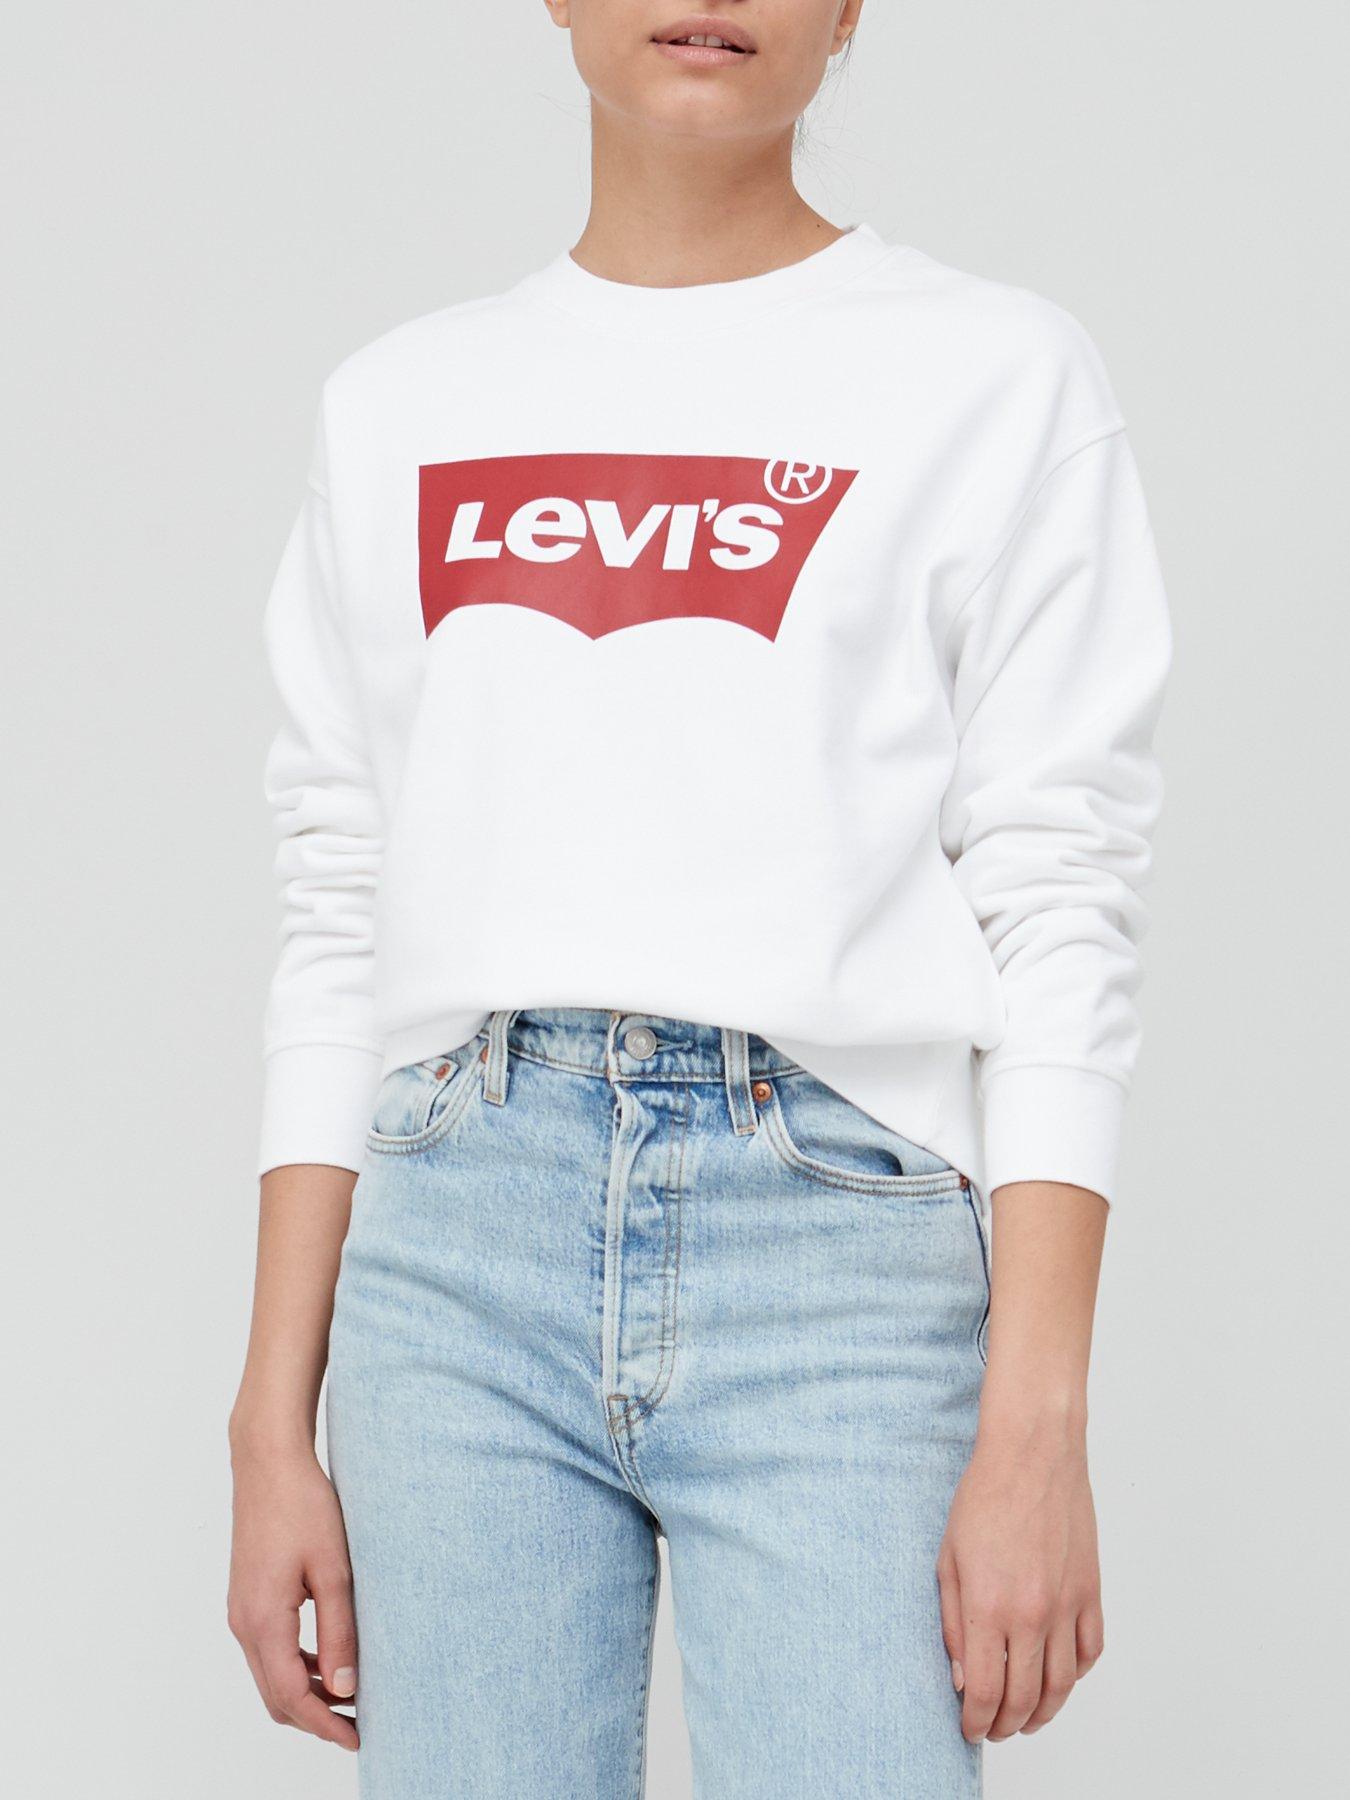 levis grey jumper